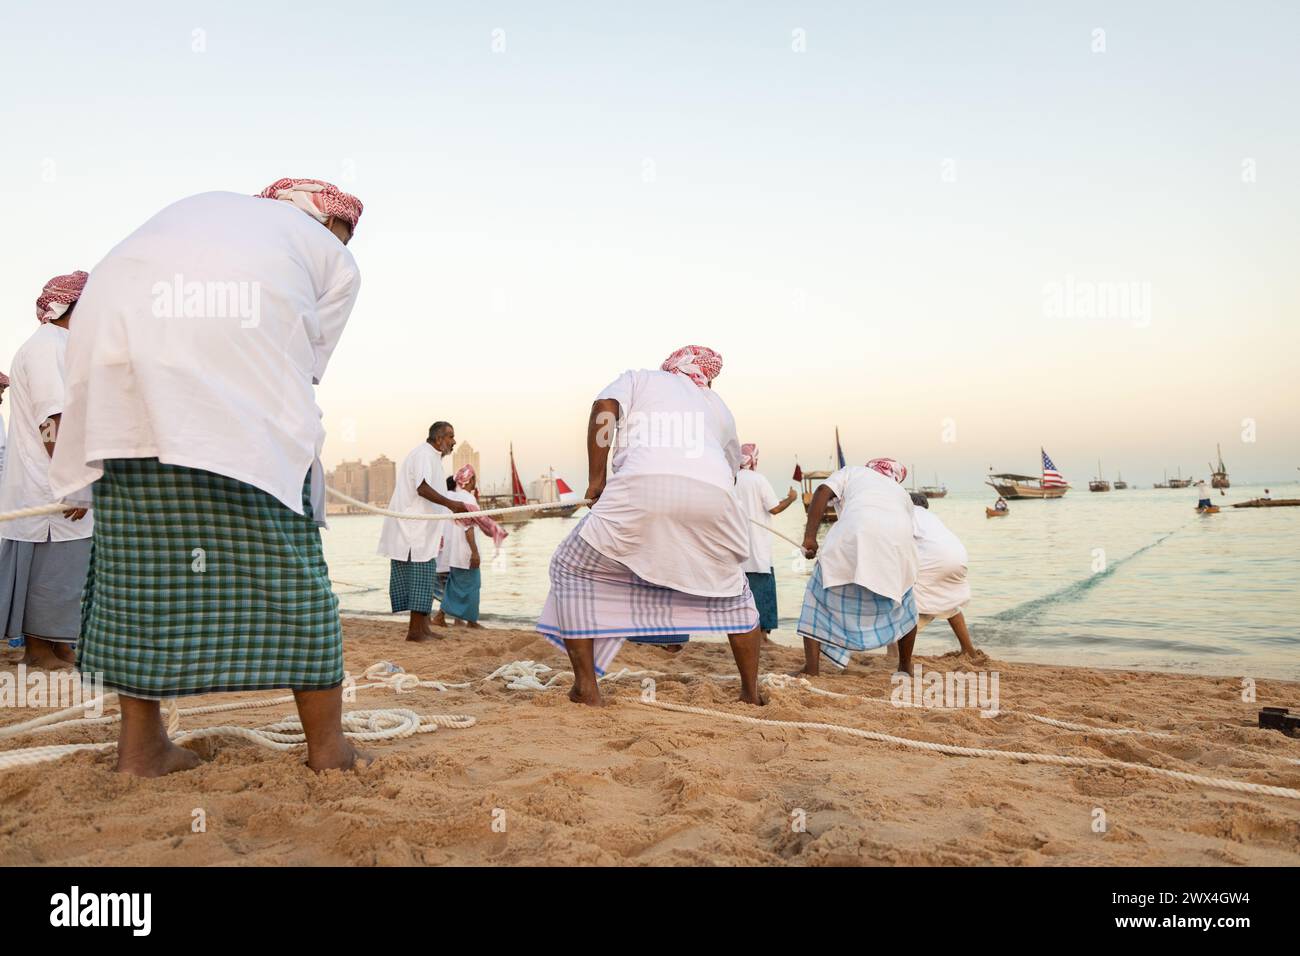 Des pêcheurs arabes non identifiés tirent leur senne hors de la mer sur la plage de Katara, Doha, Qatar. La pêche reste la principale source de revenus pour les habitants. Banque D'Images